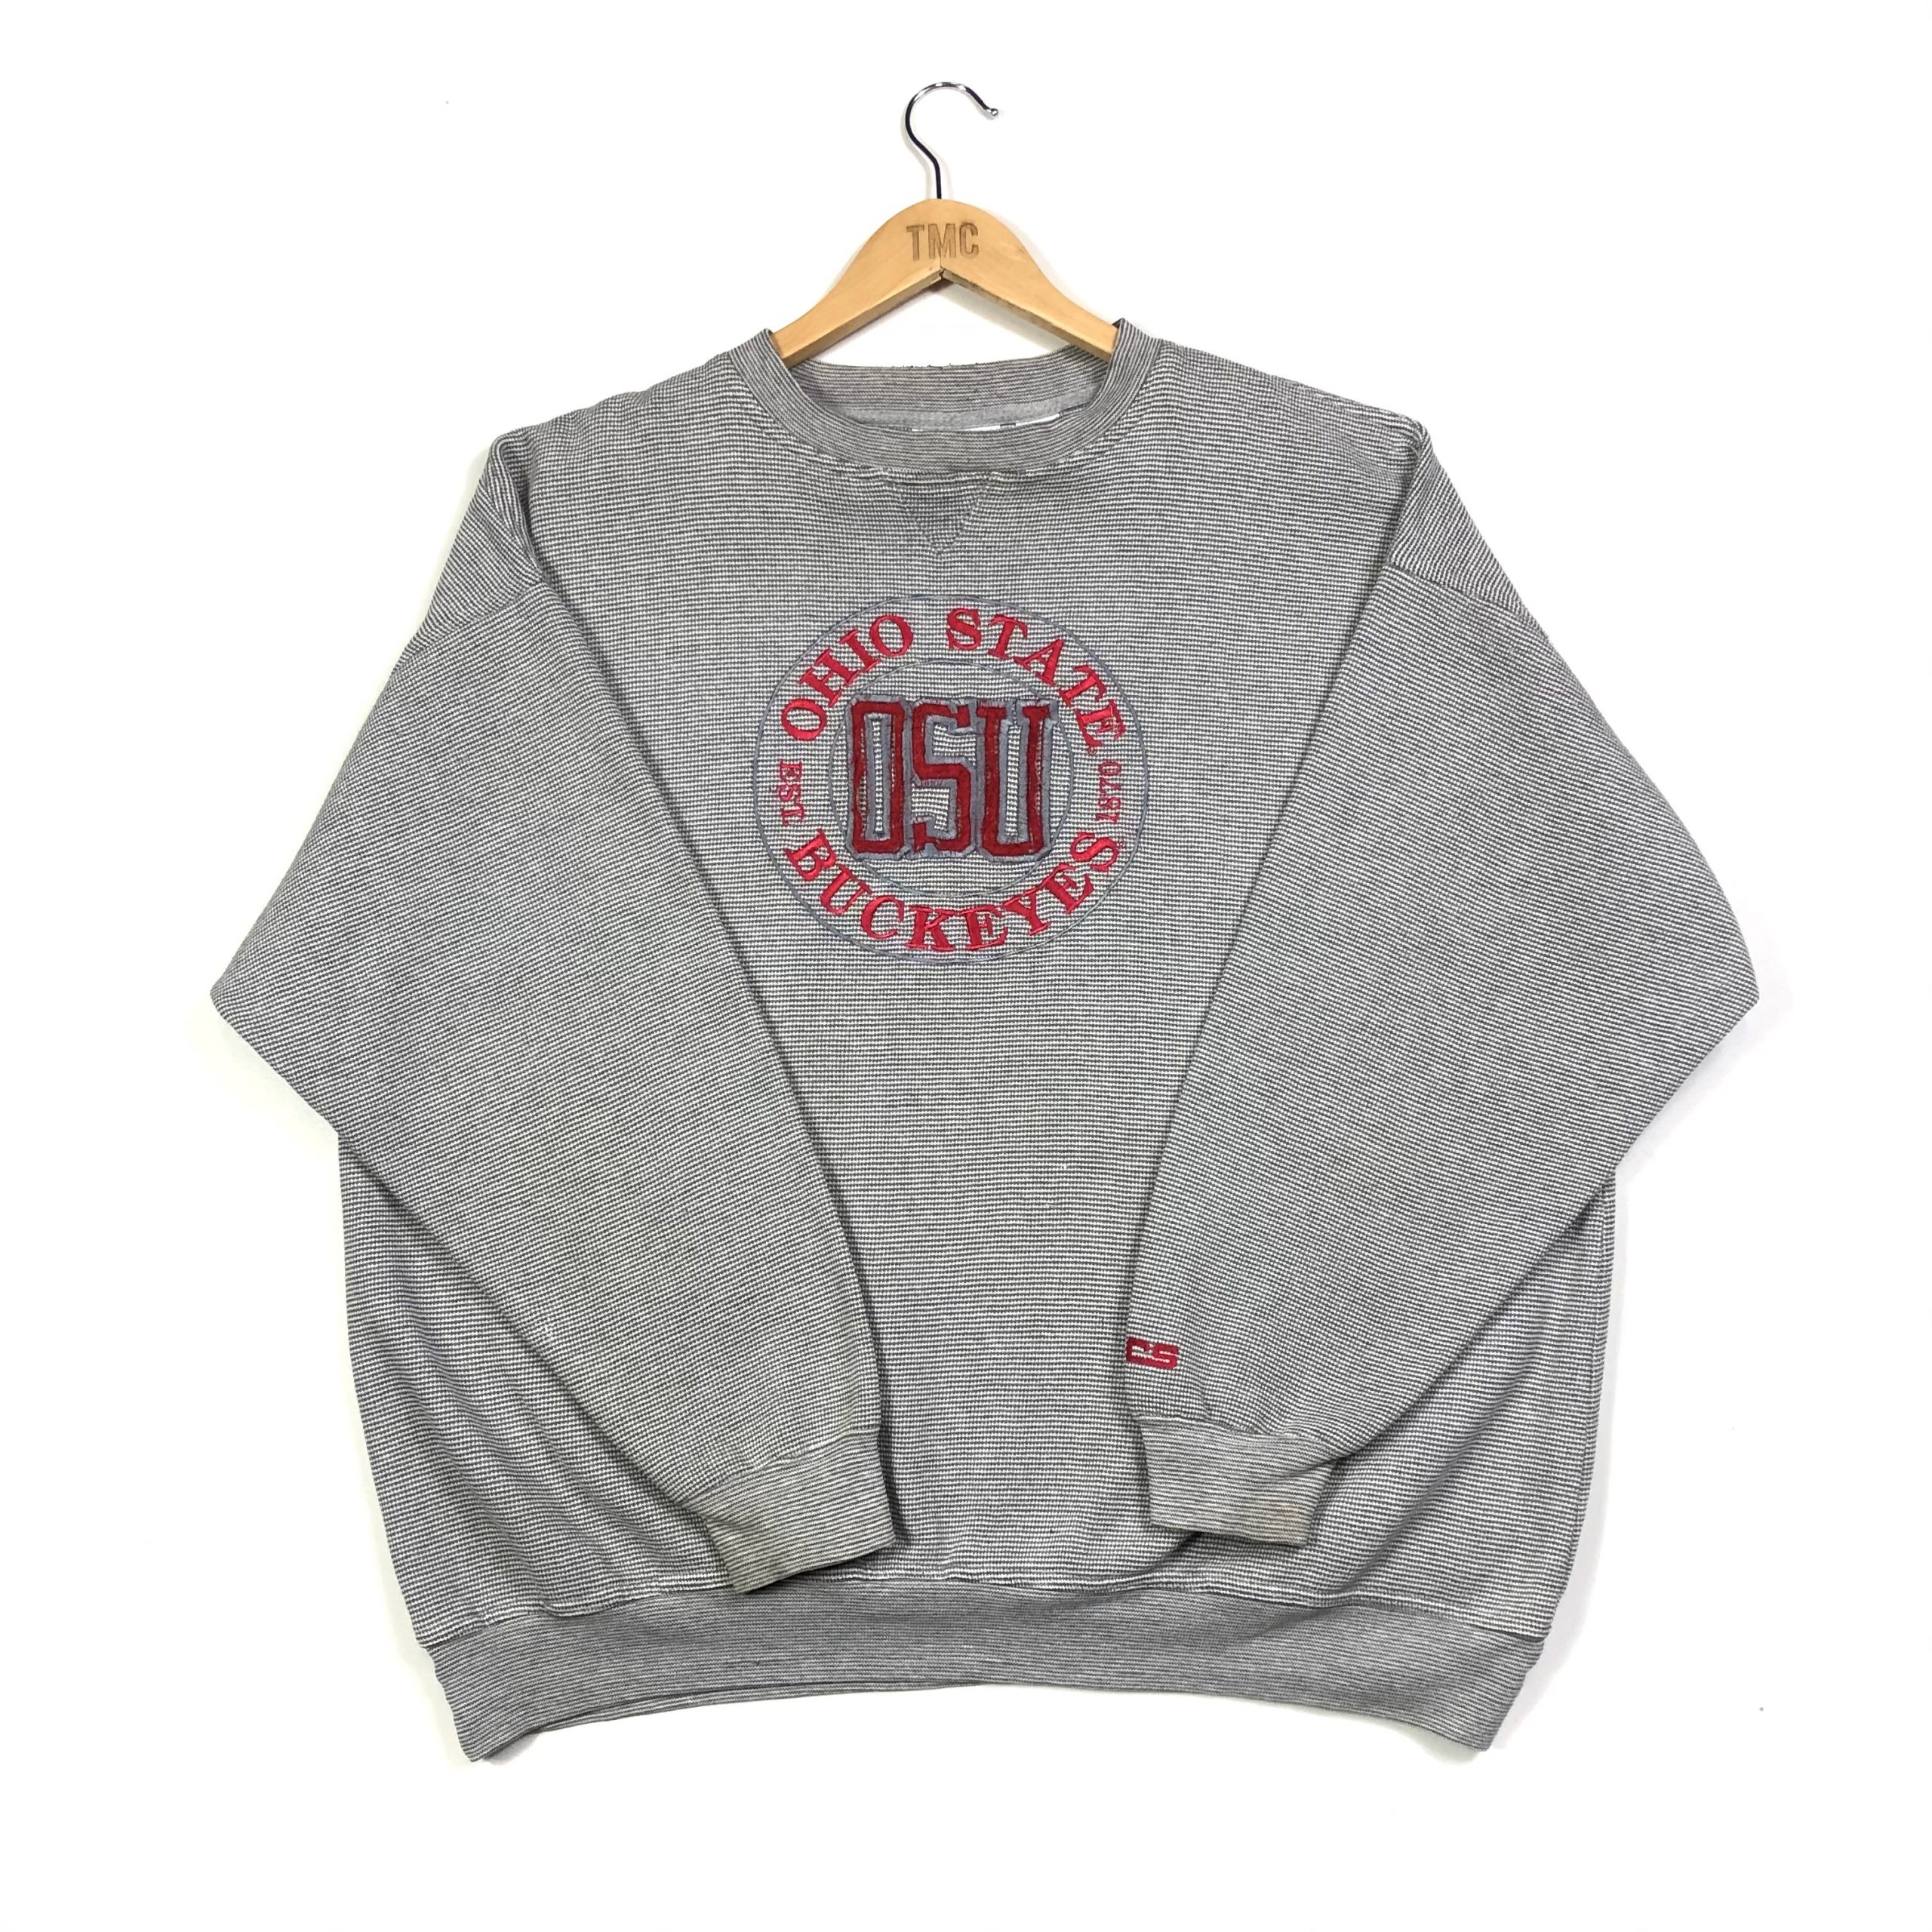 USA Ohio State Buckeyes Embroidered Sweatshirt - Grey - XL - TMC ...